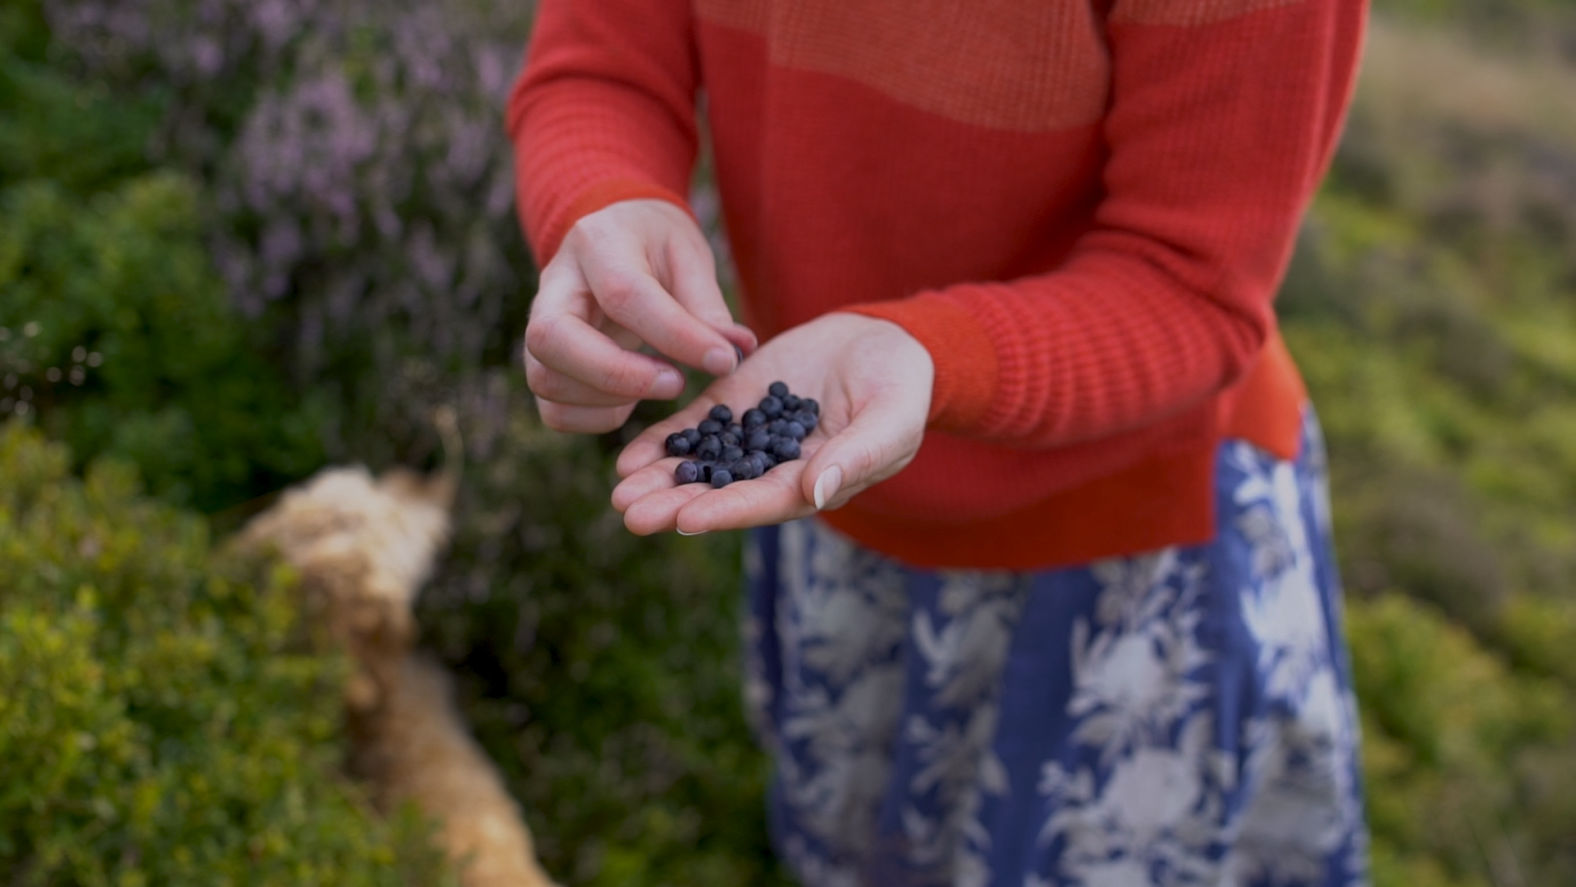 flora collingwood-norris picking berries